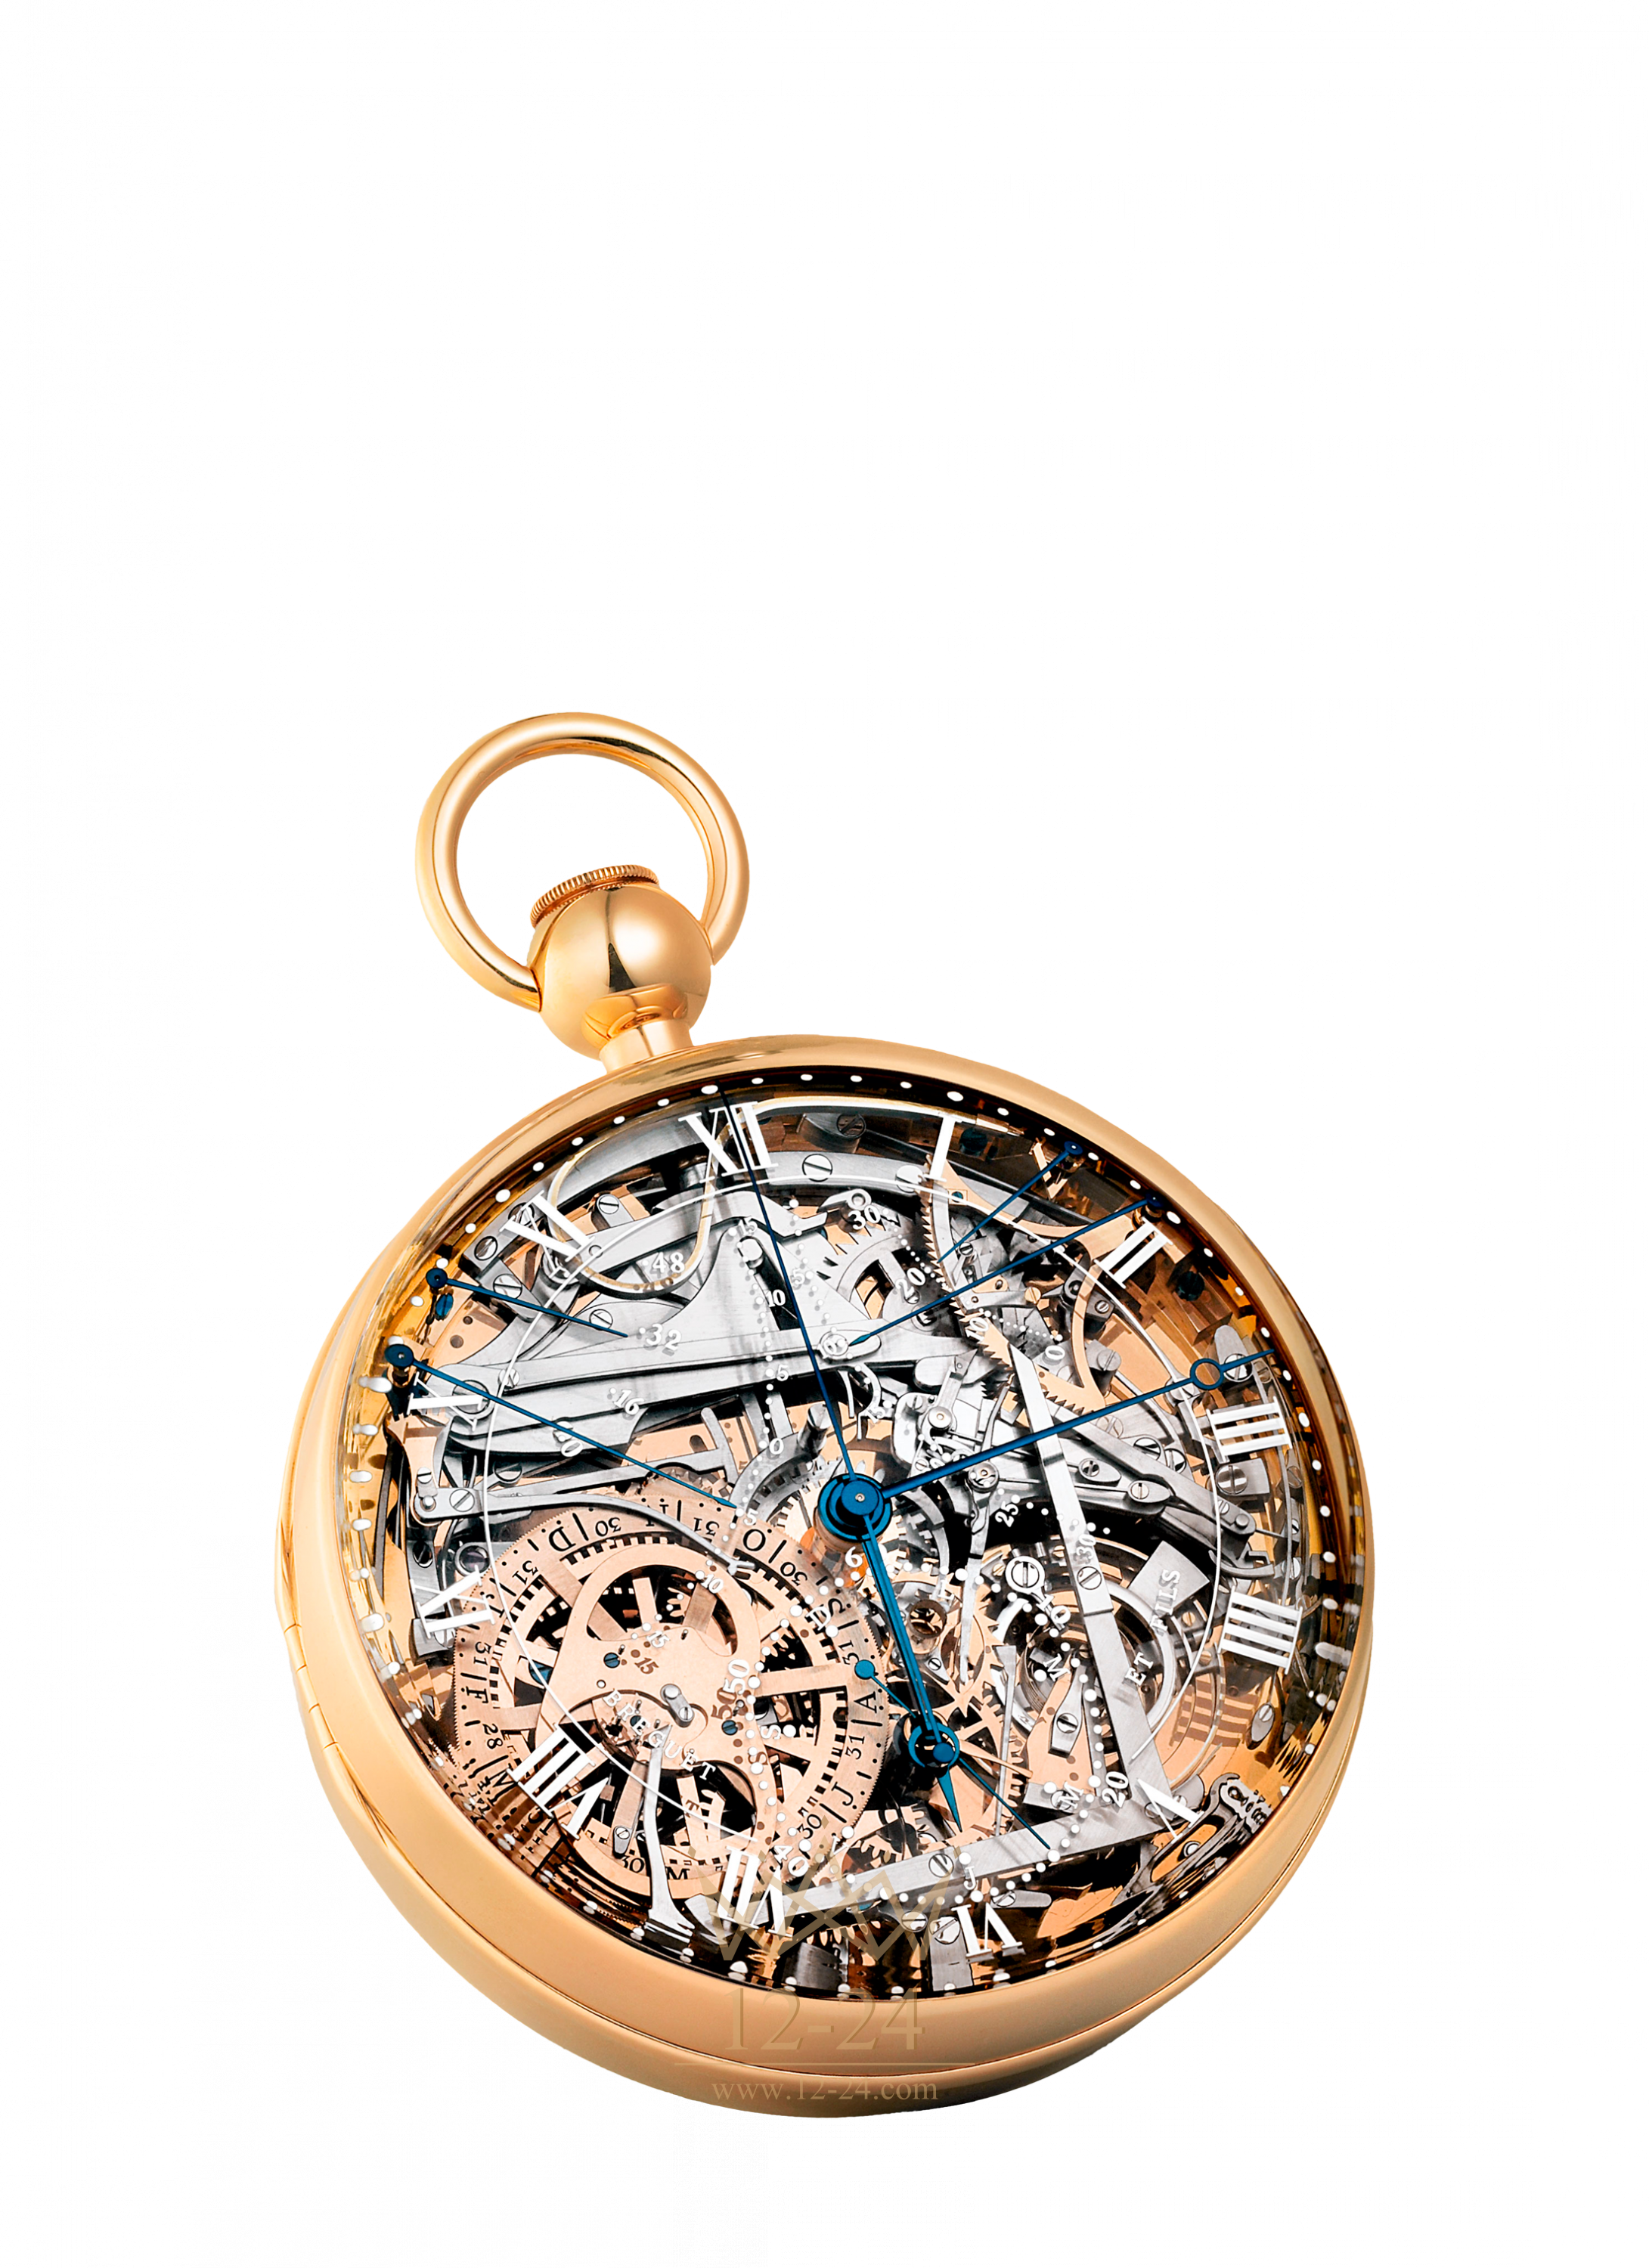 Marie watch. Breguet часы Марии Антуанетты. Карманные часы Breguet Marie-Antoinette grande. Breguet grande Complication Marie-Antoinette.